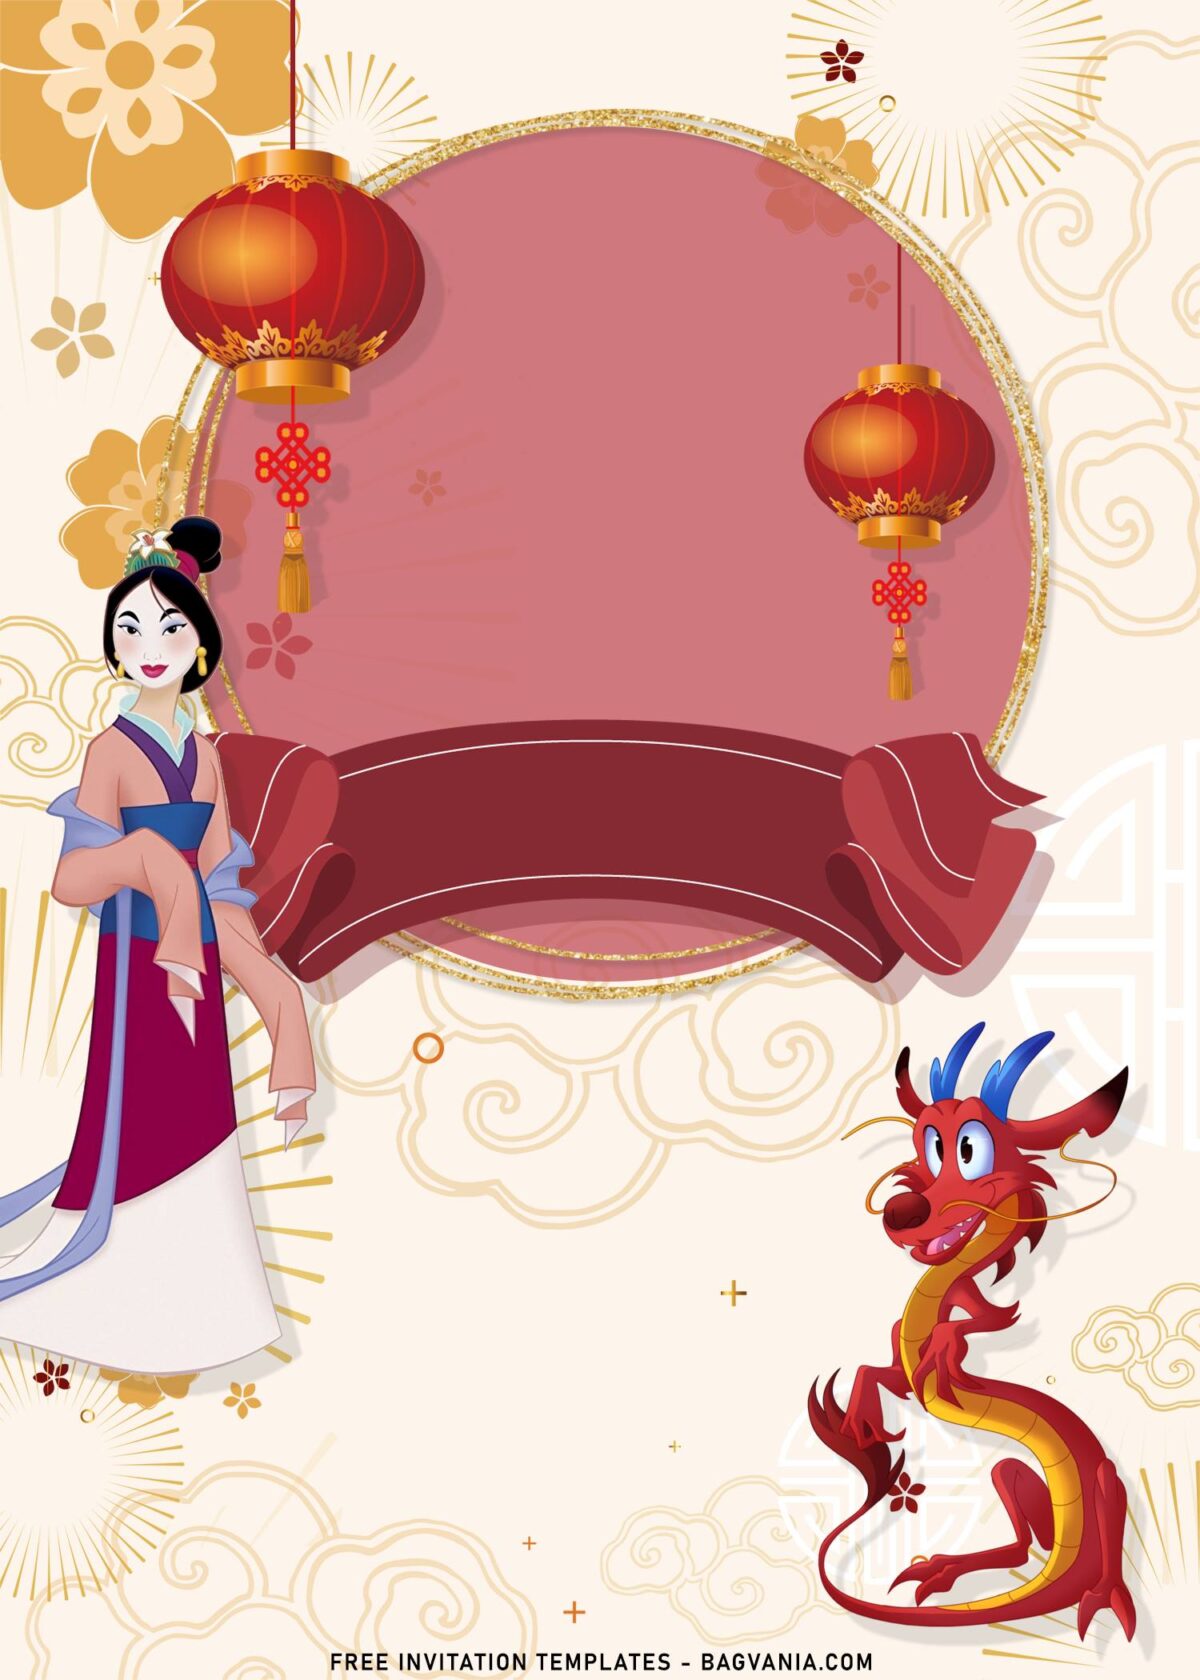 8+ Princess Mulan Birthday Invitation Templates with Adorable Pink Ribbon